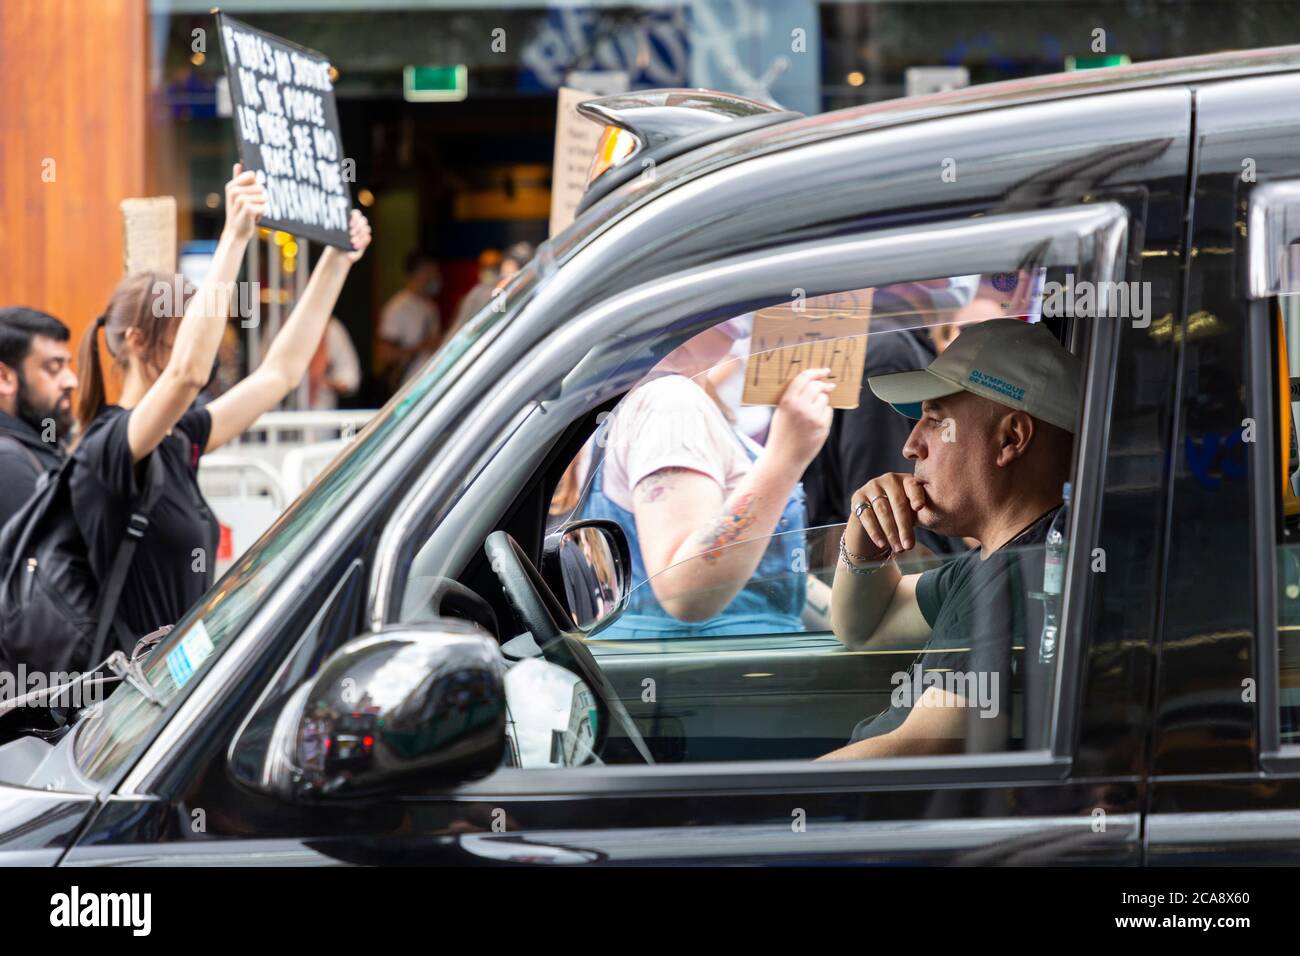 Un conducteur dans une voiture obstruée regarde pendant une démonstration de Black Lives Matter, Londres, 2 août 2020 Banque D'Images